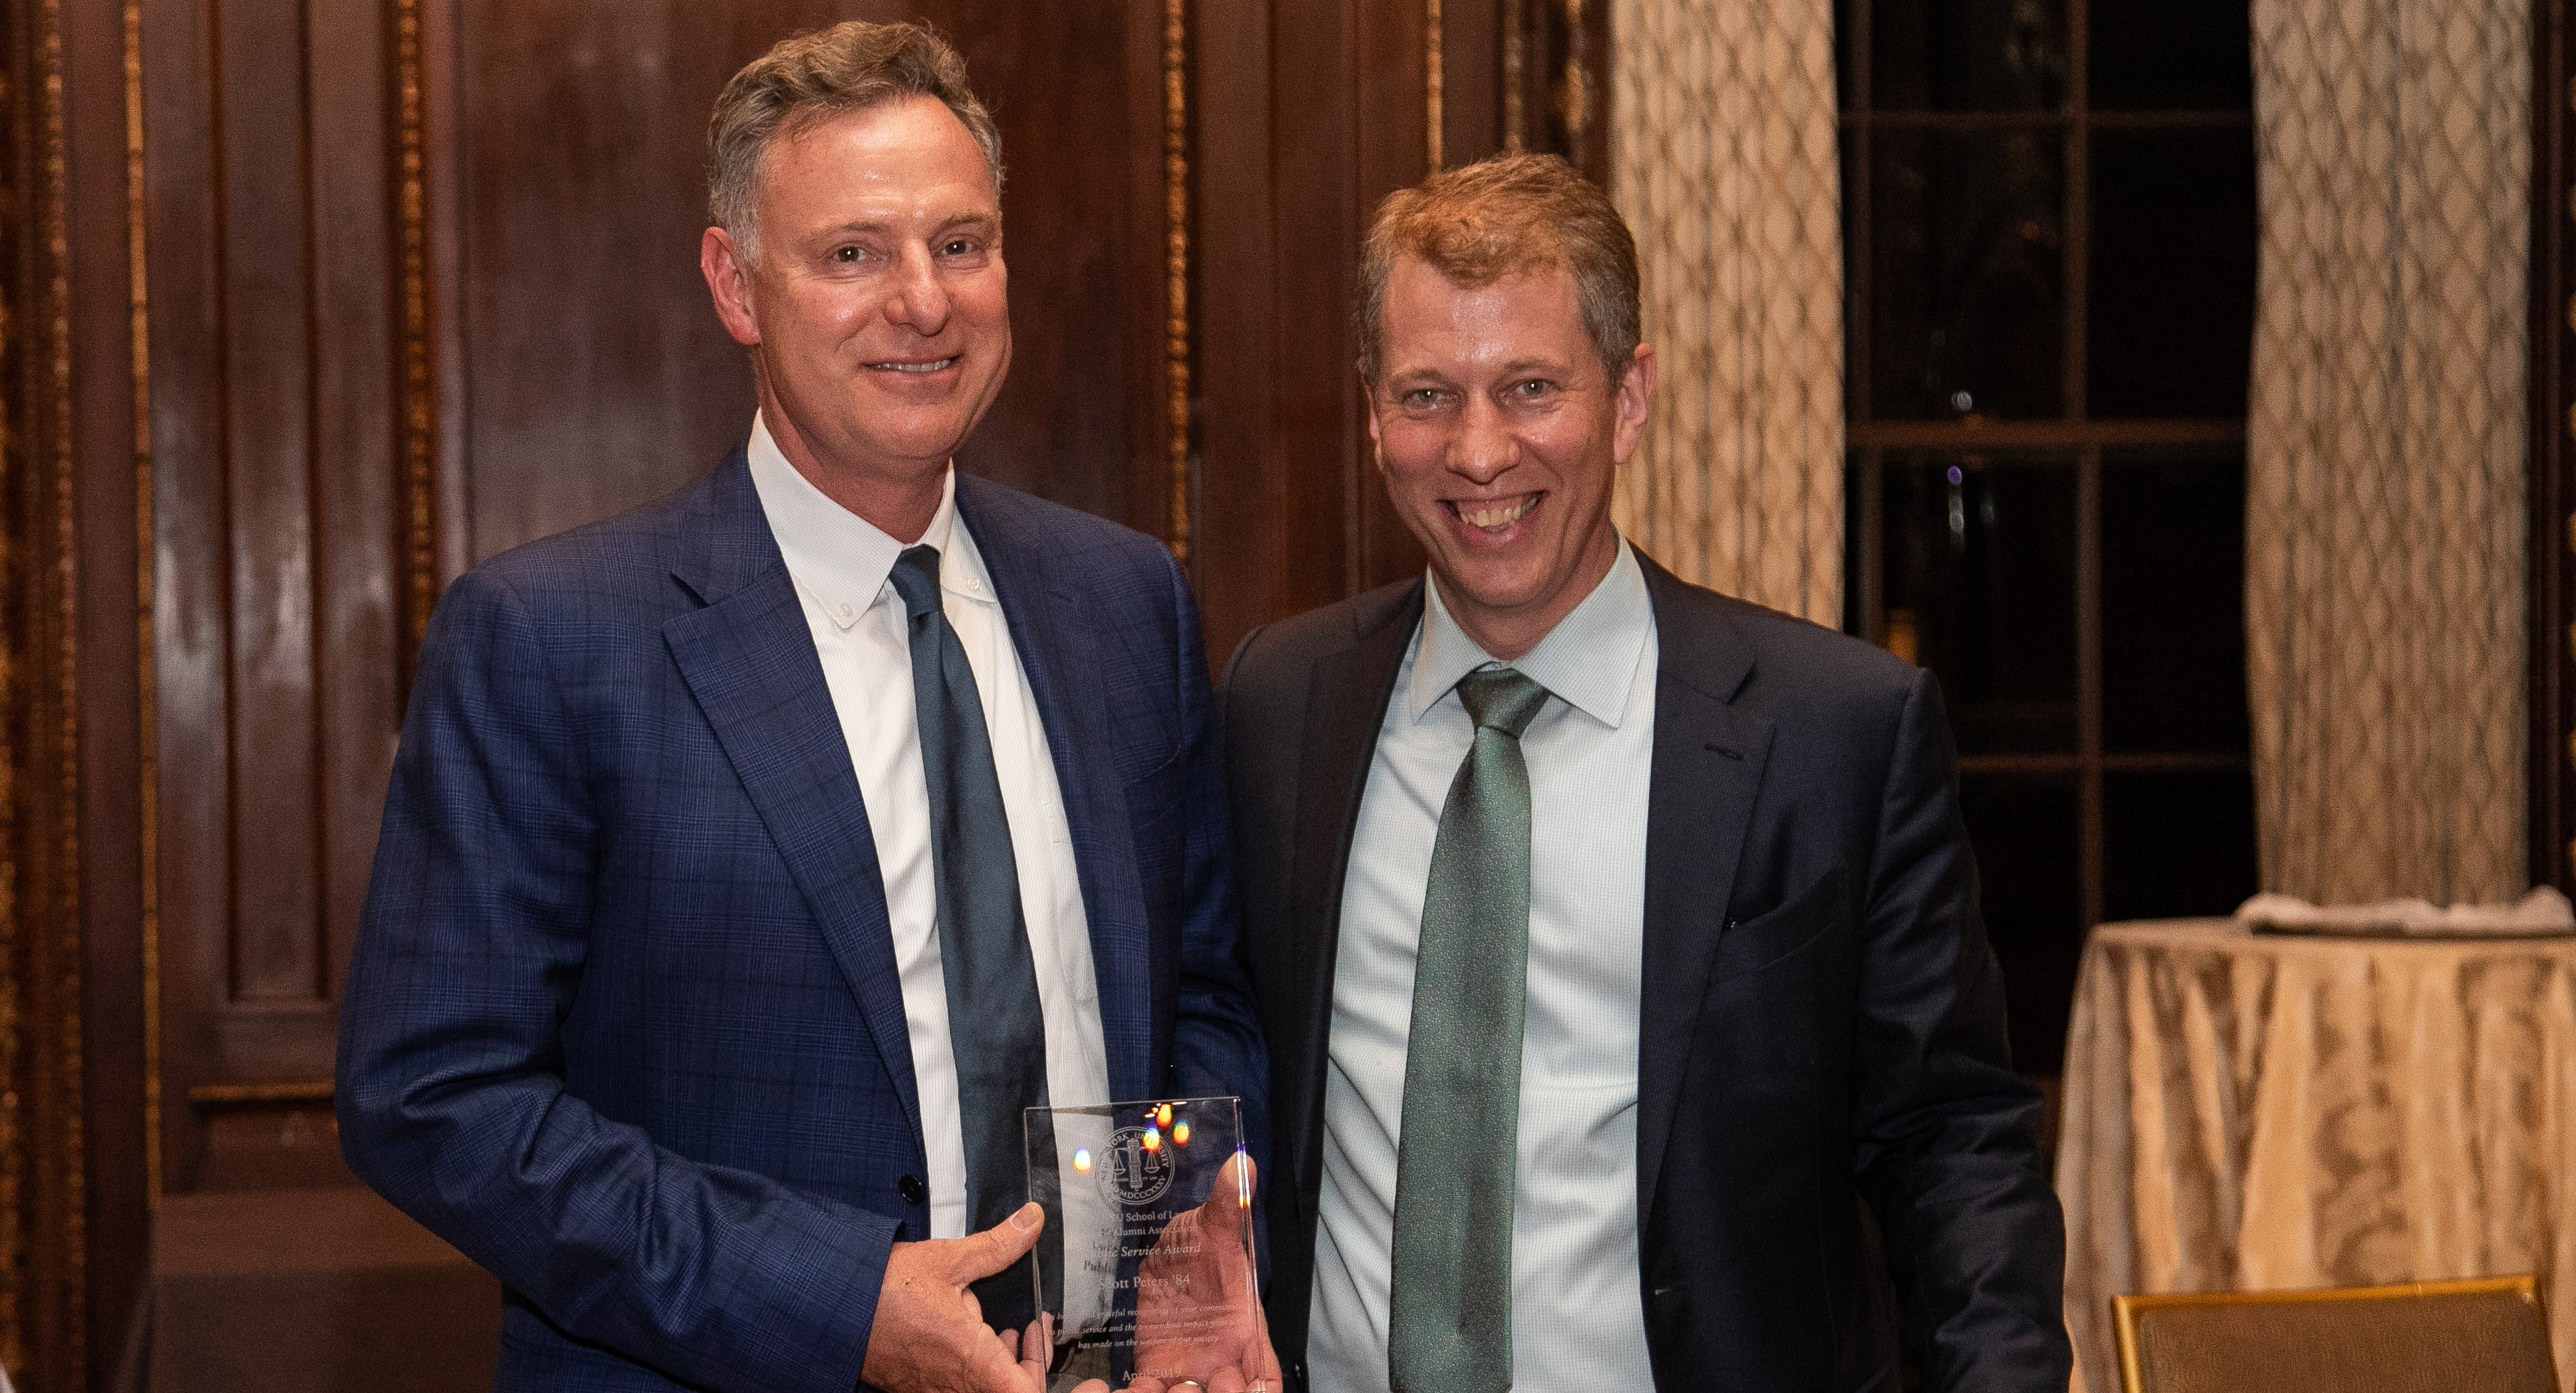 Scott Peters receiving an award from Dean Trevor Morrison at Reunion 2019